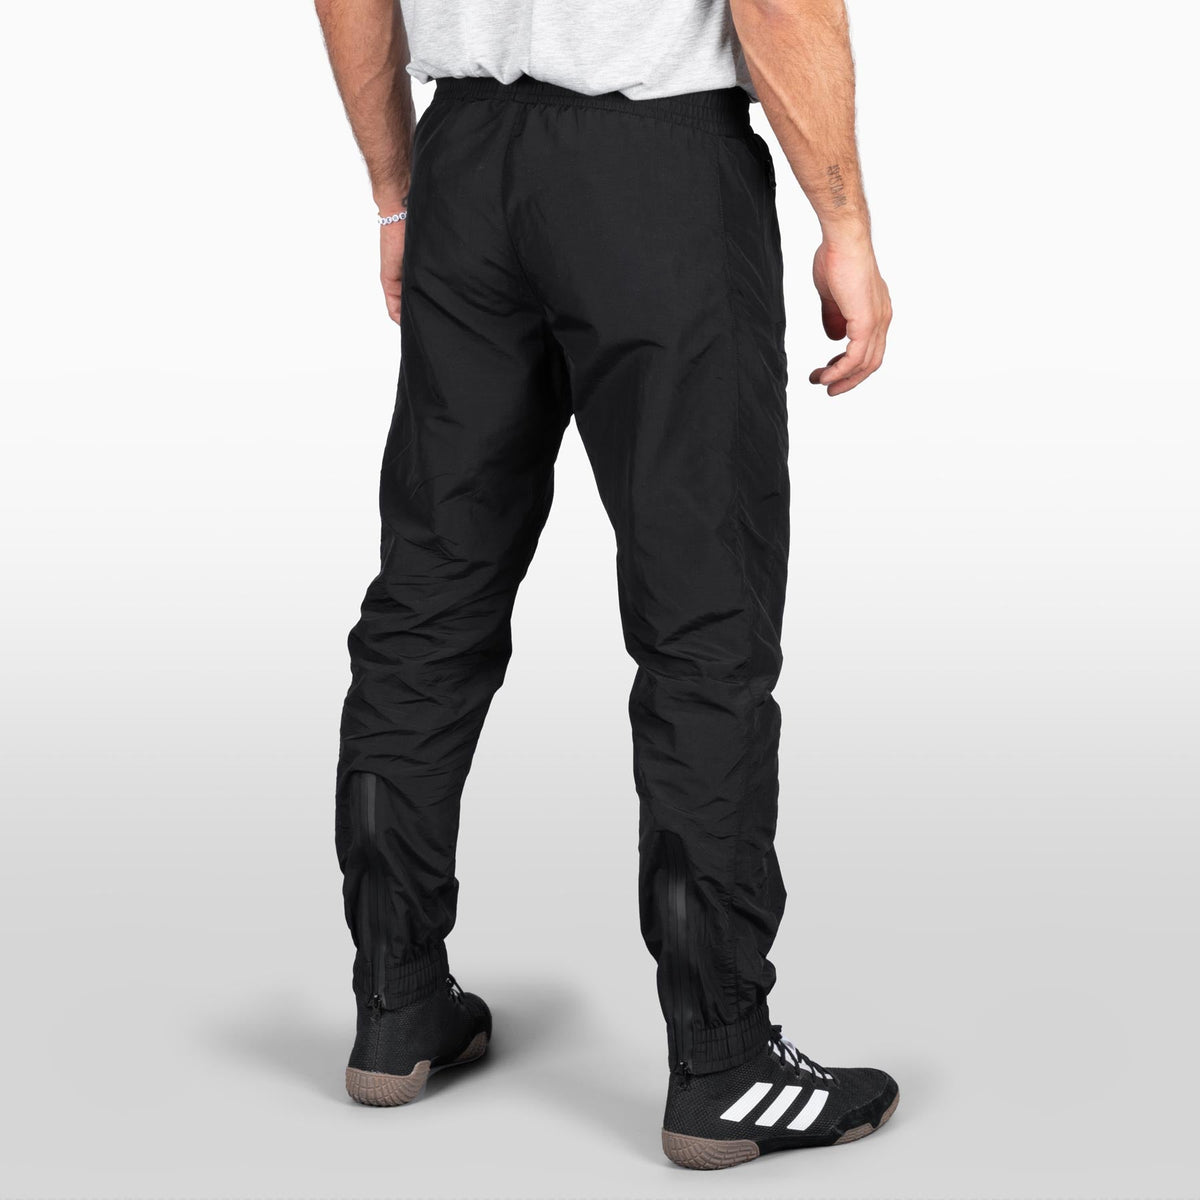 Tréninkový oblek DMC pro bojové umělce. Ideální pro wrestling, MMA, BJJ warm up nebo jogging. Kvalitní materiály a sportovní střih s čistým designem a zipy na nohavicích, takže se snadno obouvá i vyzouvá s botami.